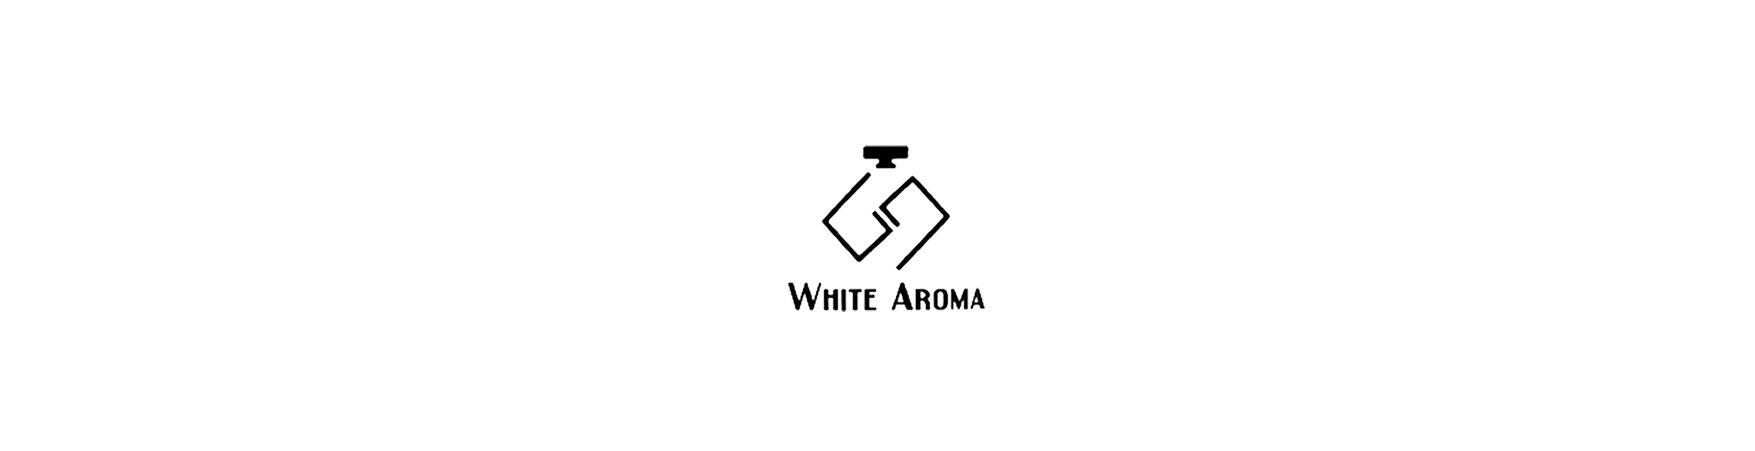 White Aroma